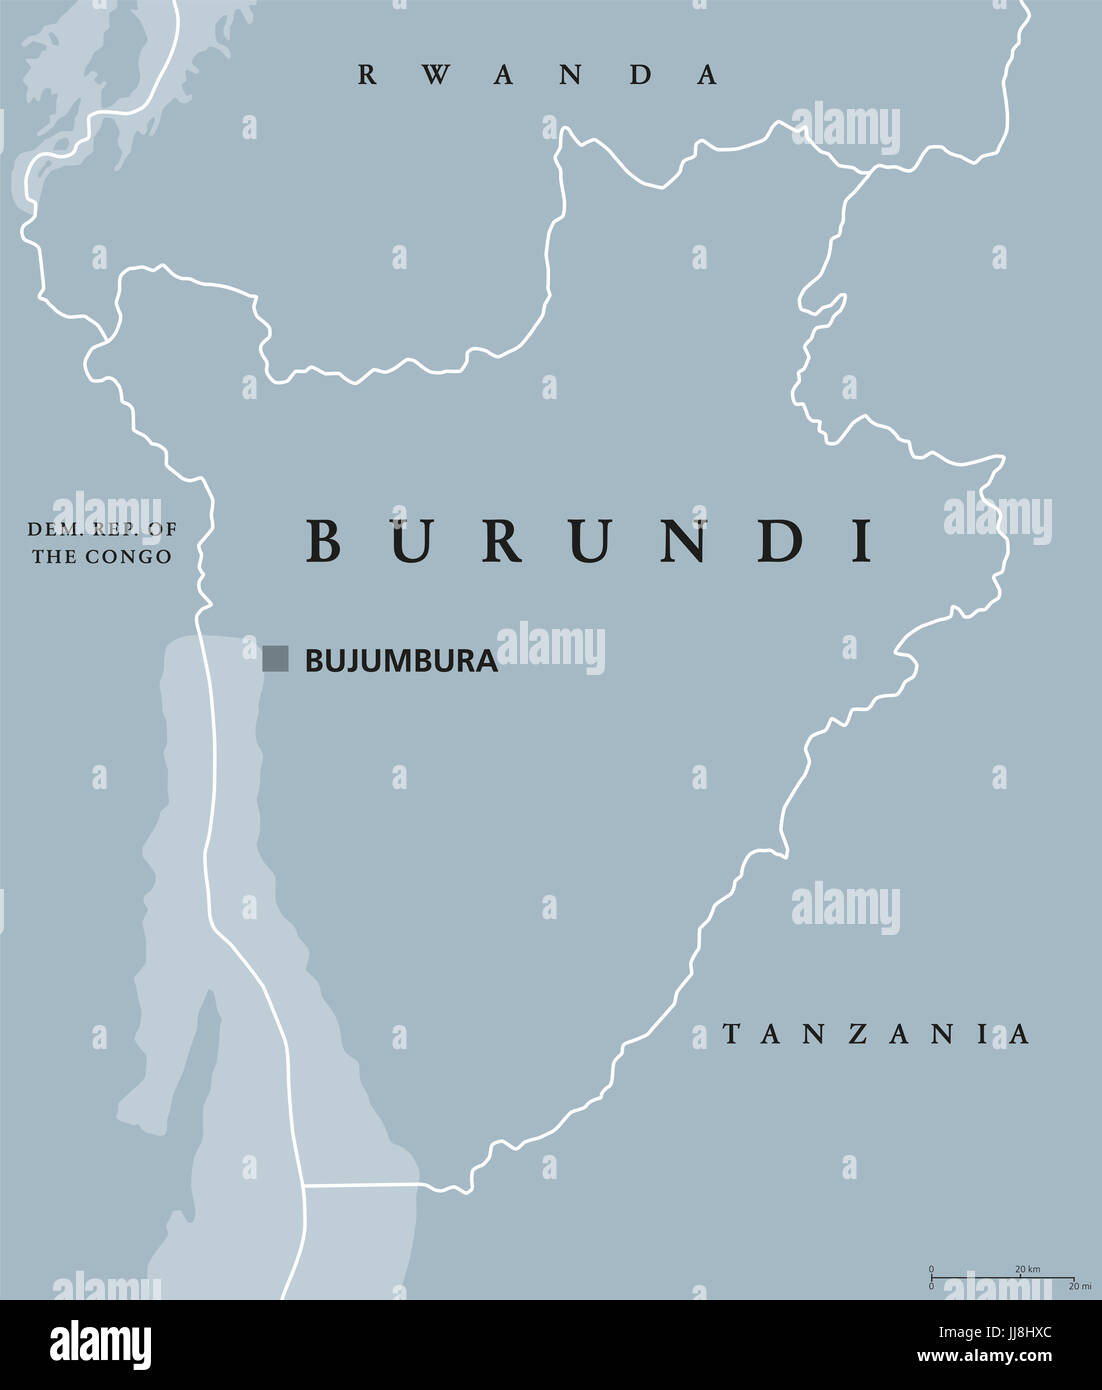 Burundi mappa politico con capitale Bujumbura e i confini internazionali. Repubblica e paese senza sbocco sul mare nella regione africana dei Grandi laghi in Africa. Foto Stock